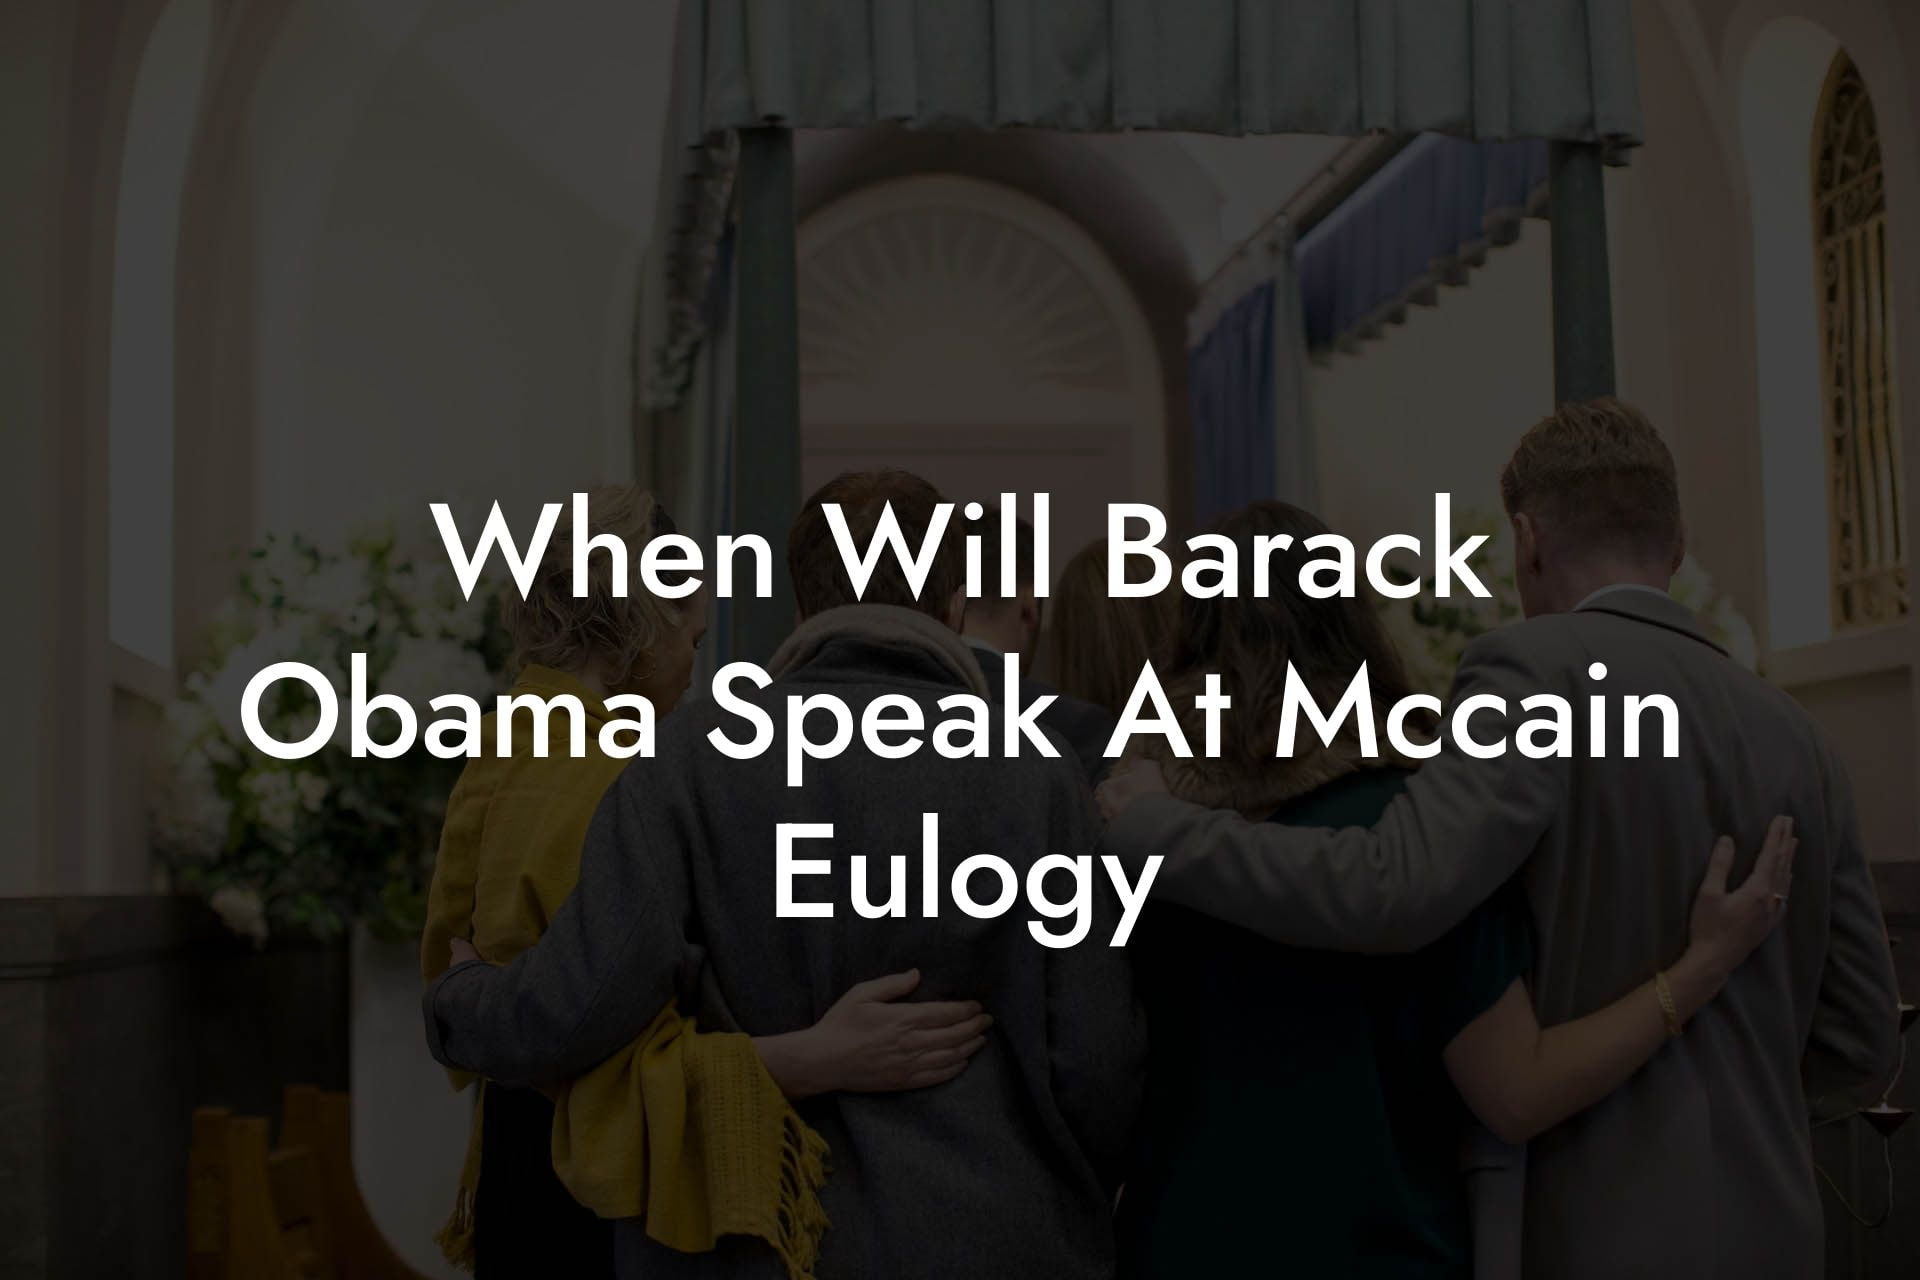 When Will Barack Obama Speak At Mccain Eulogy